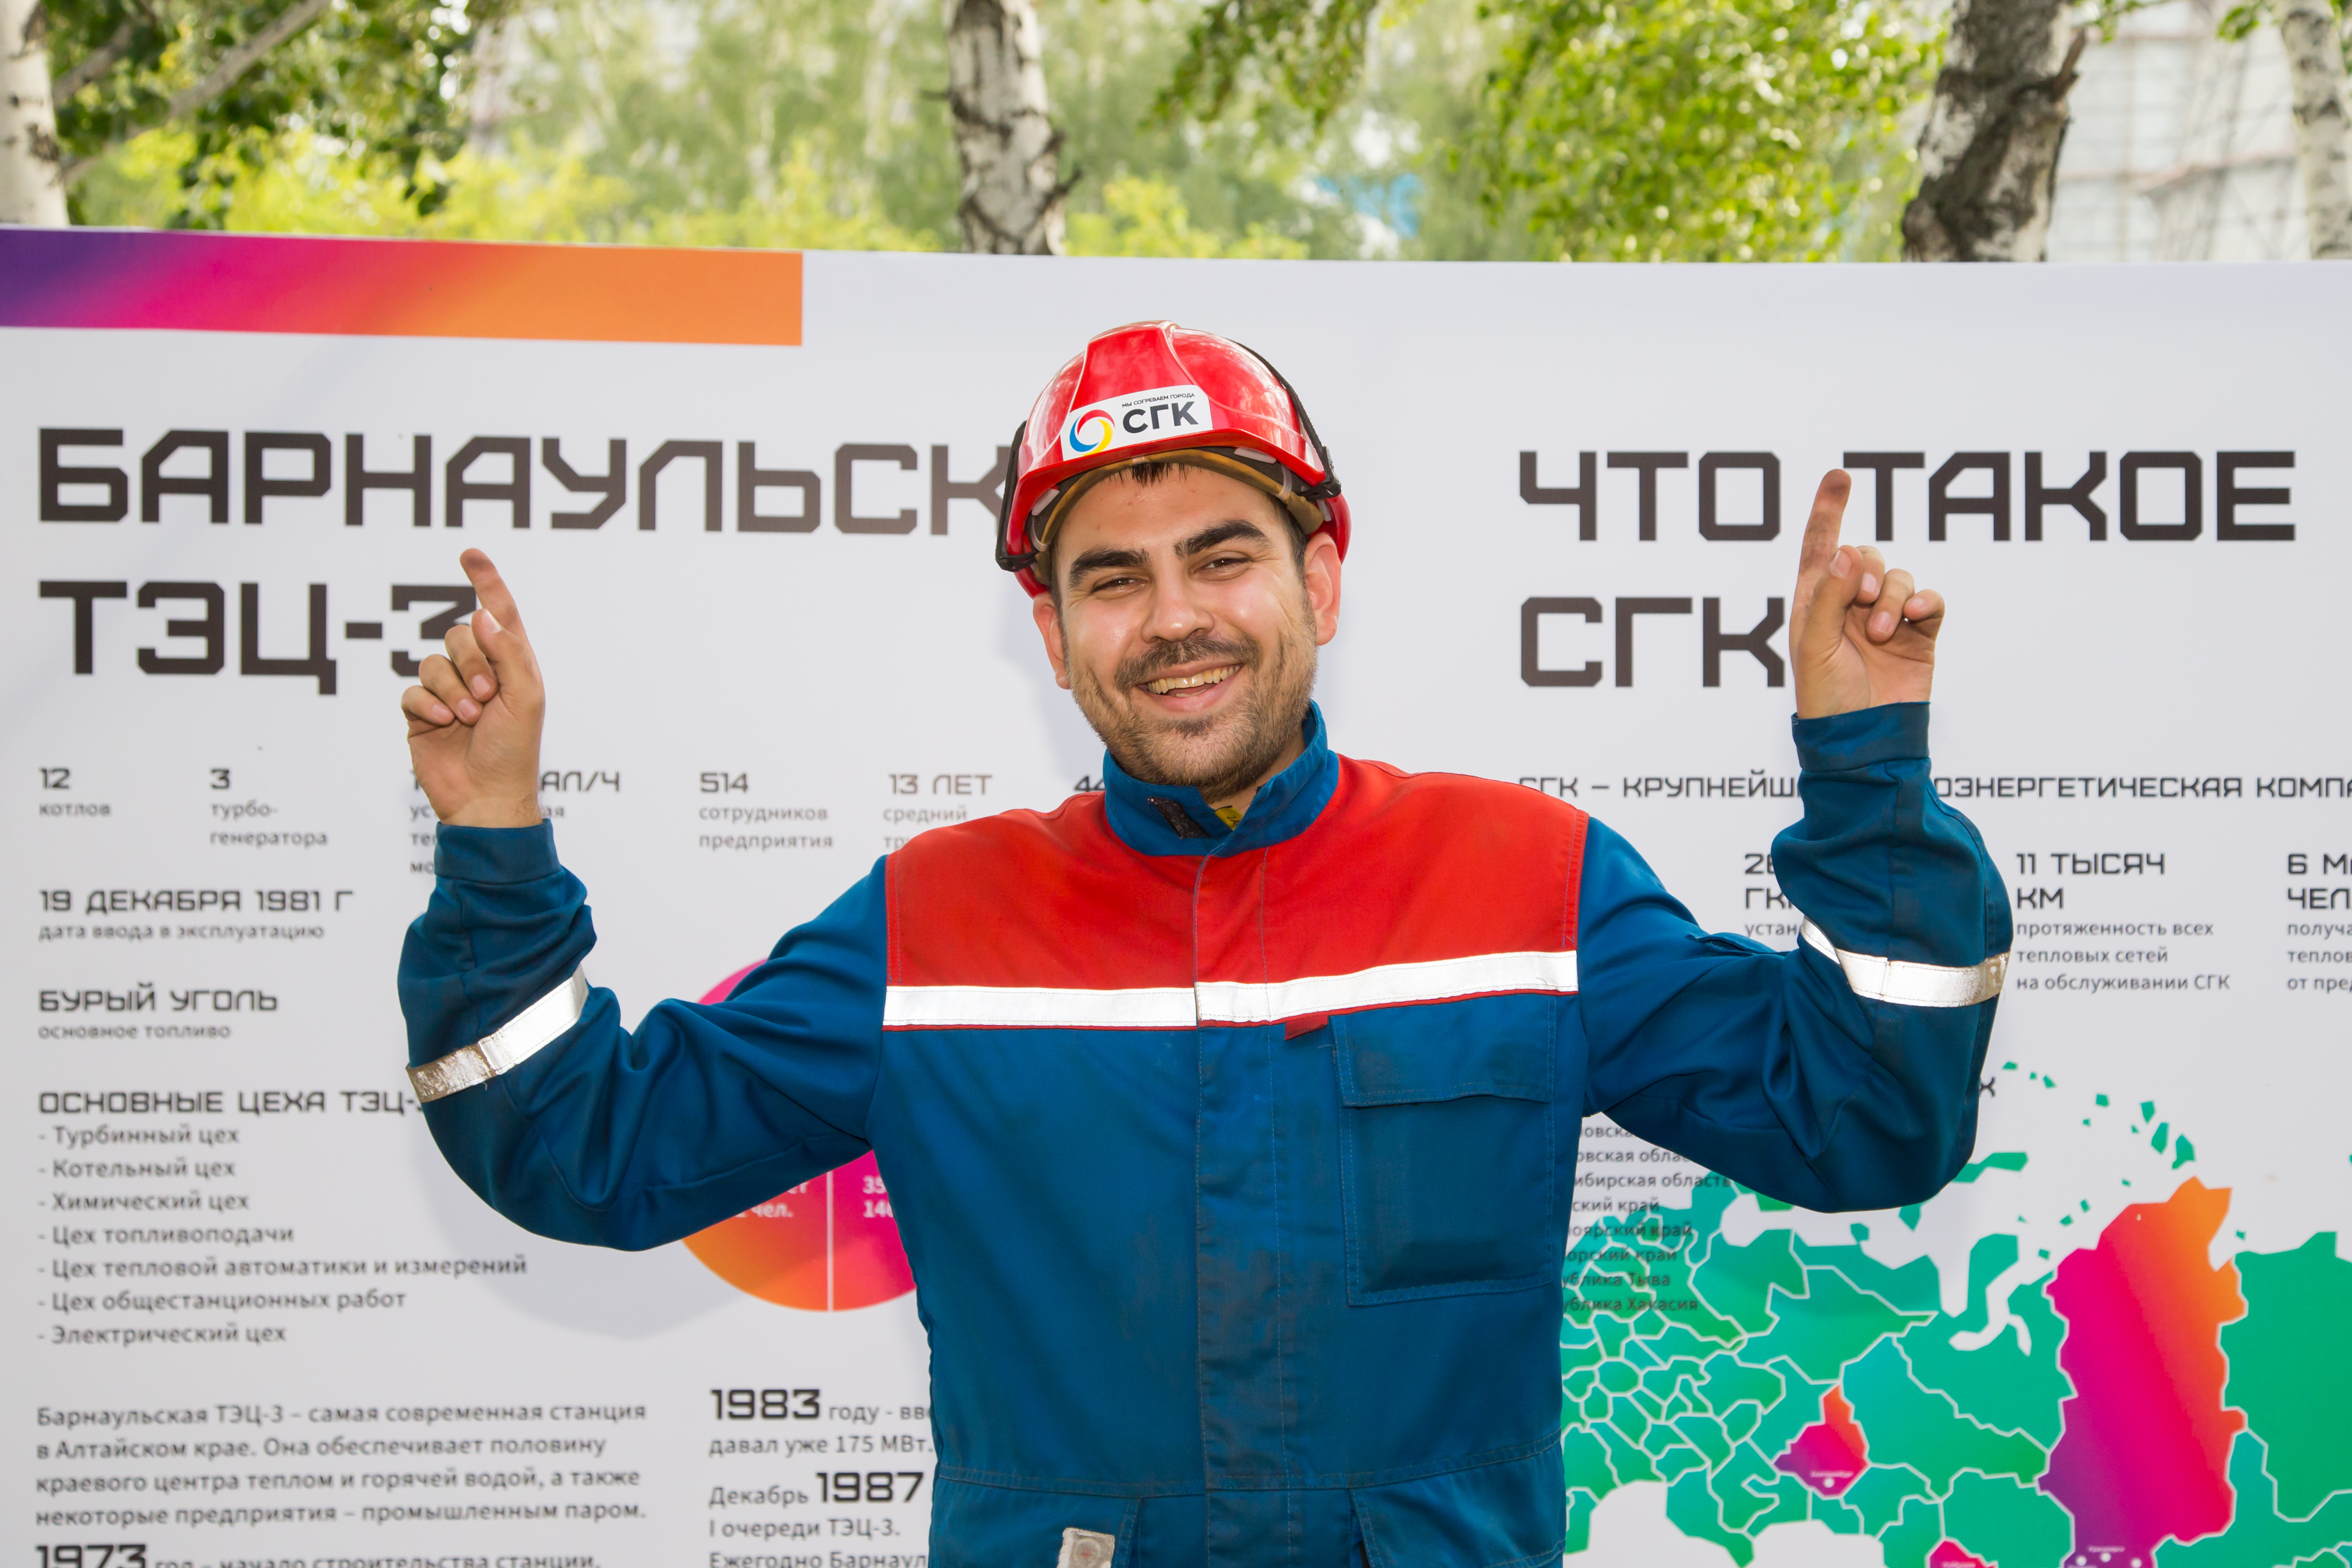 Впечатления и знания: Барнаульская ТЭЦ-3 открыла двери для гостей